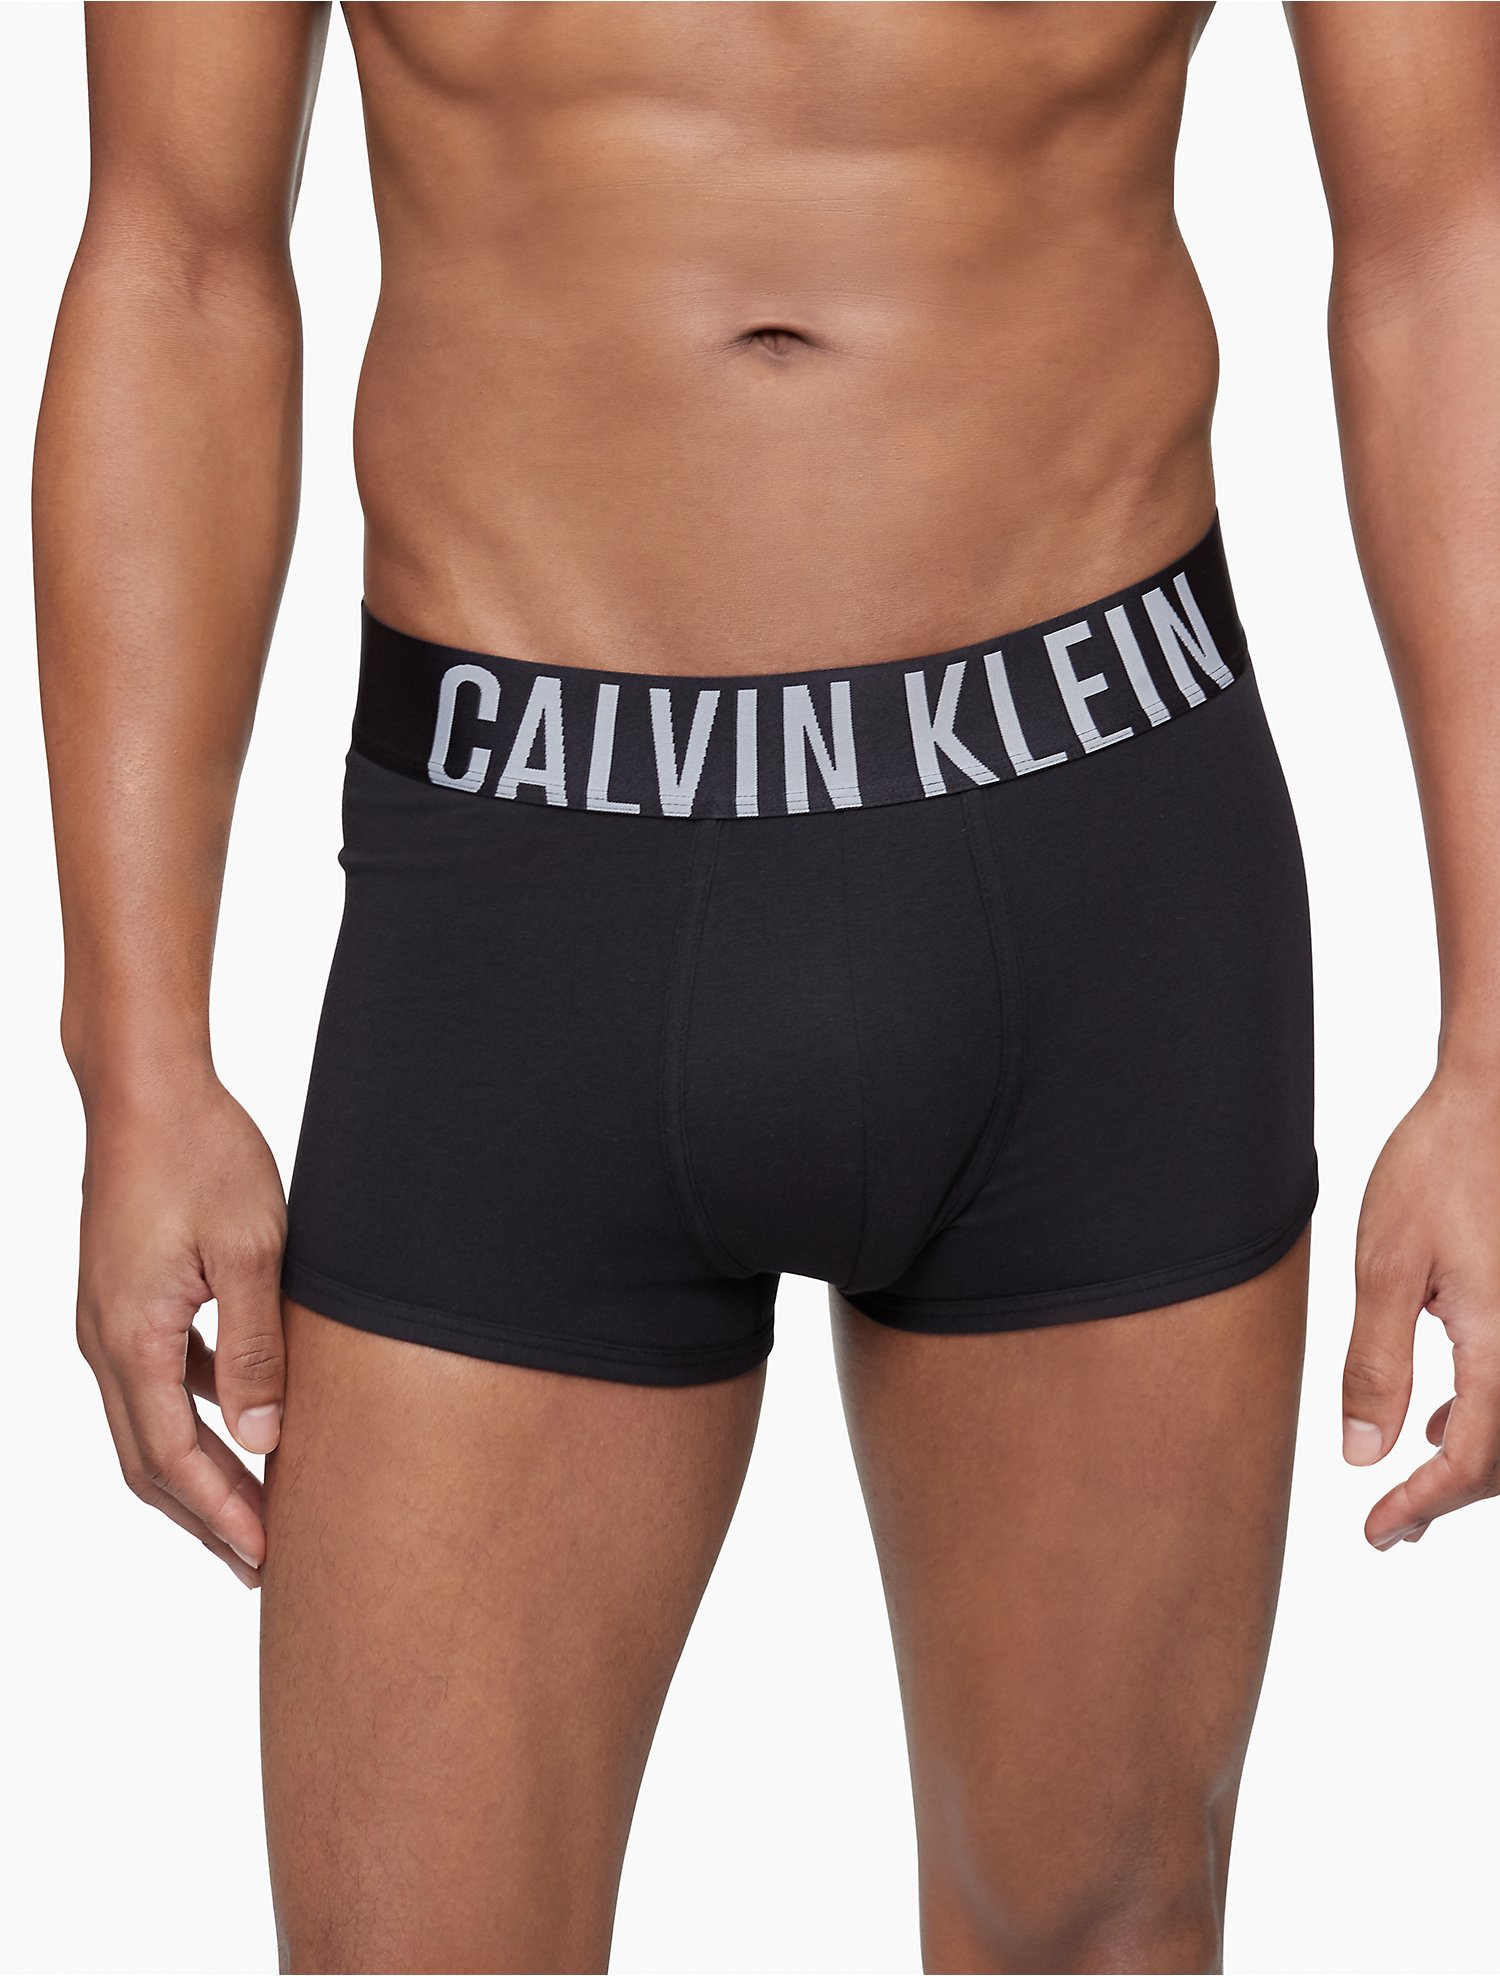 Introducir 84+ imagen calvin klein intense power underwear